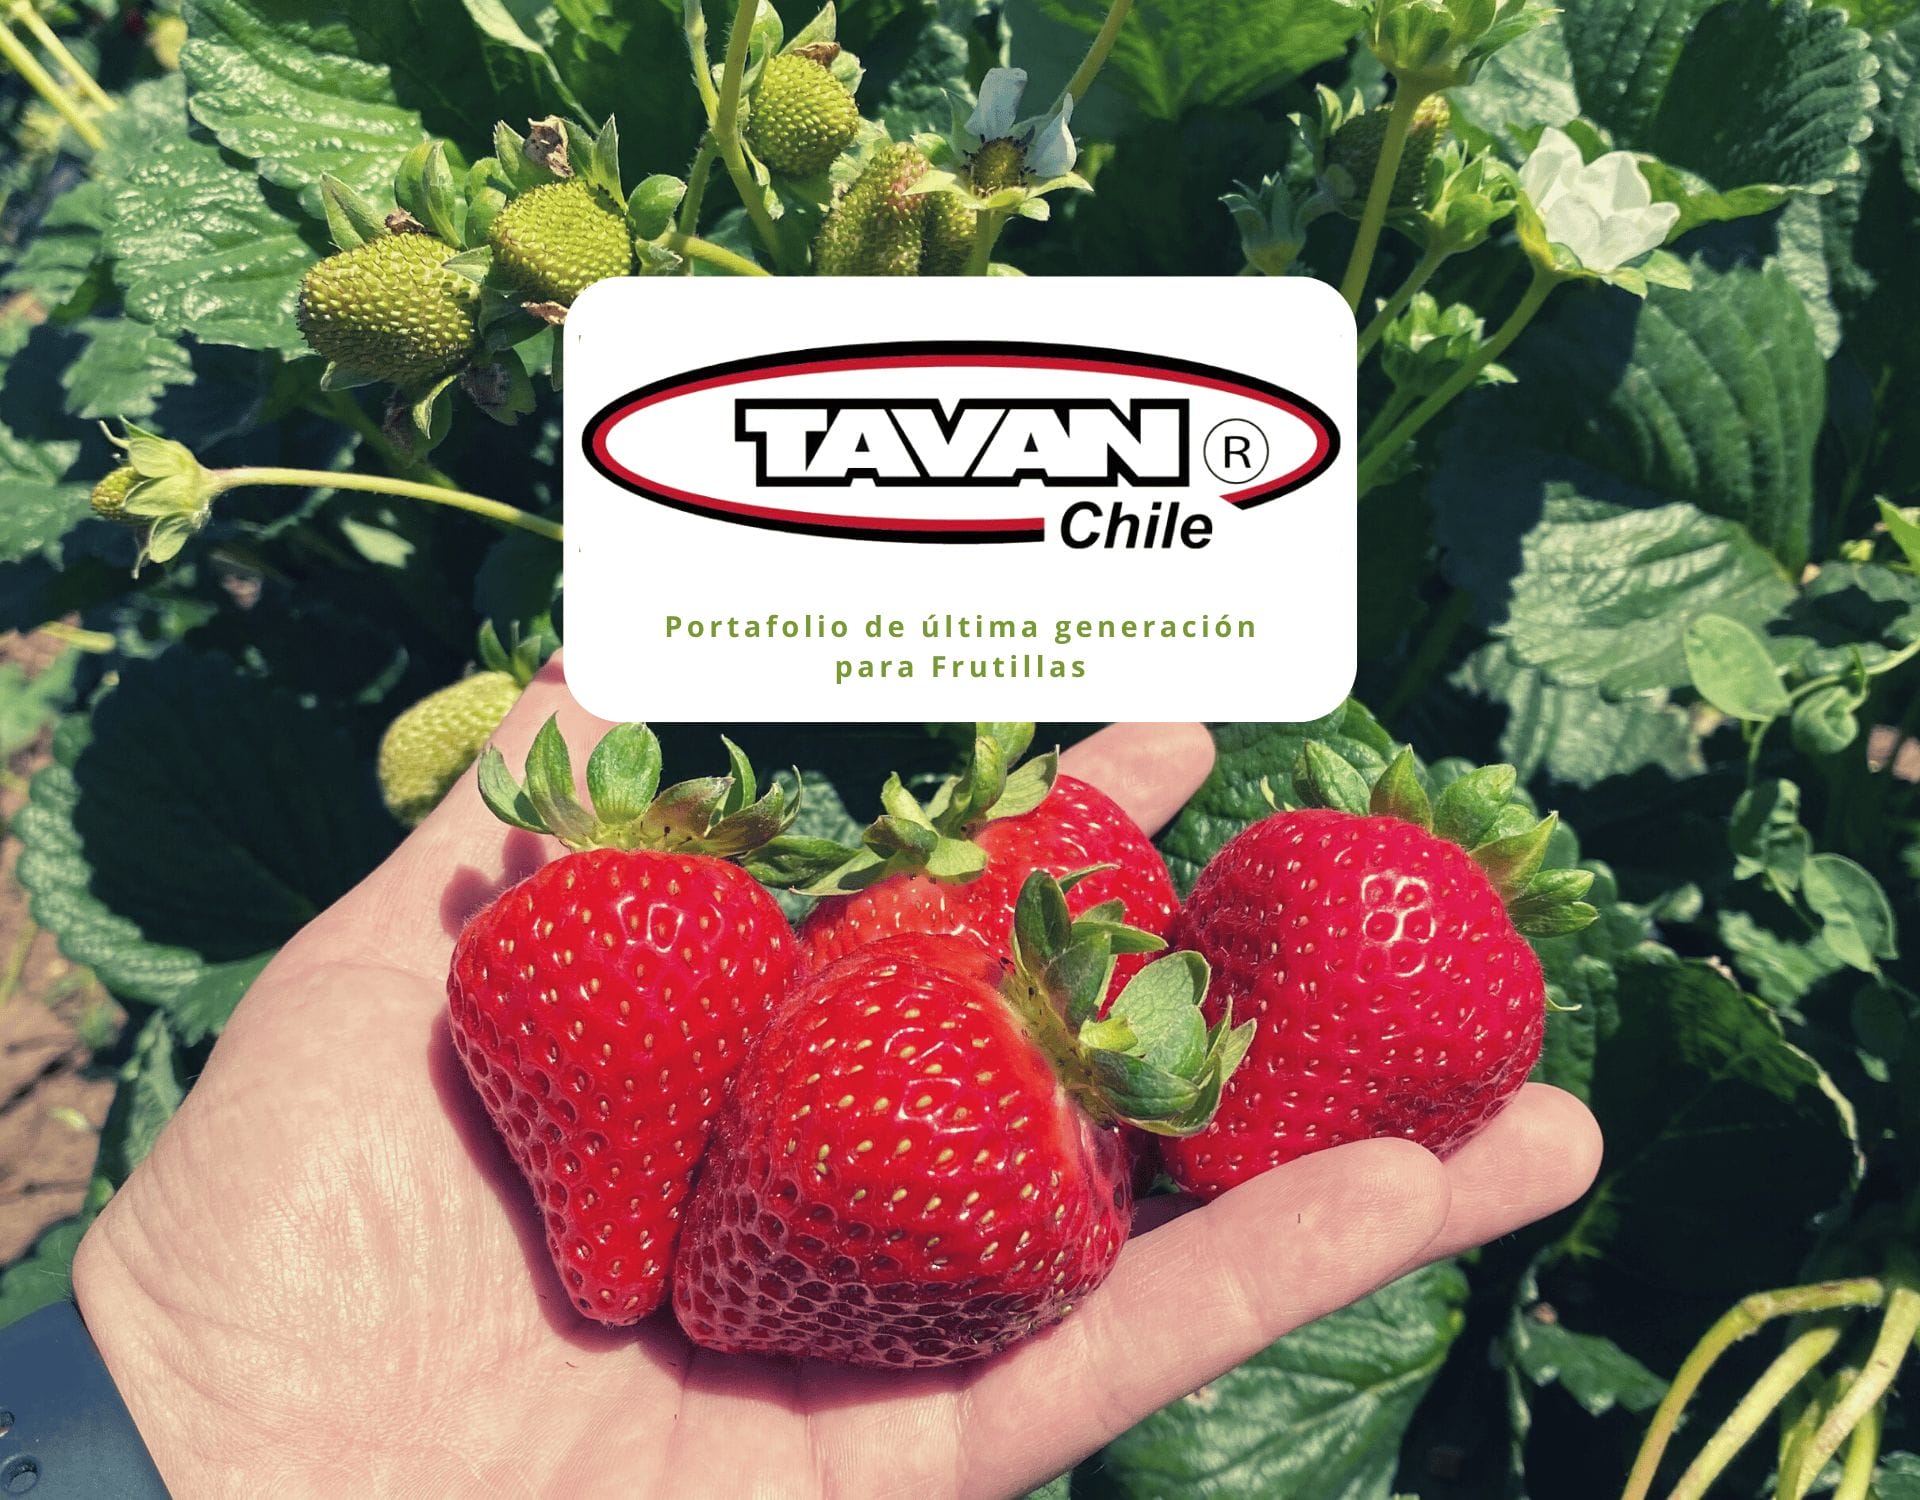 Tavan Chile: Biotecnología con soluciones de vanguardia